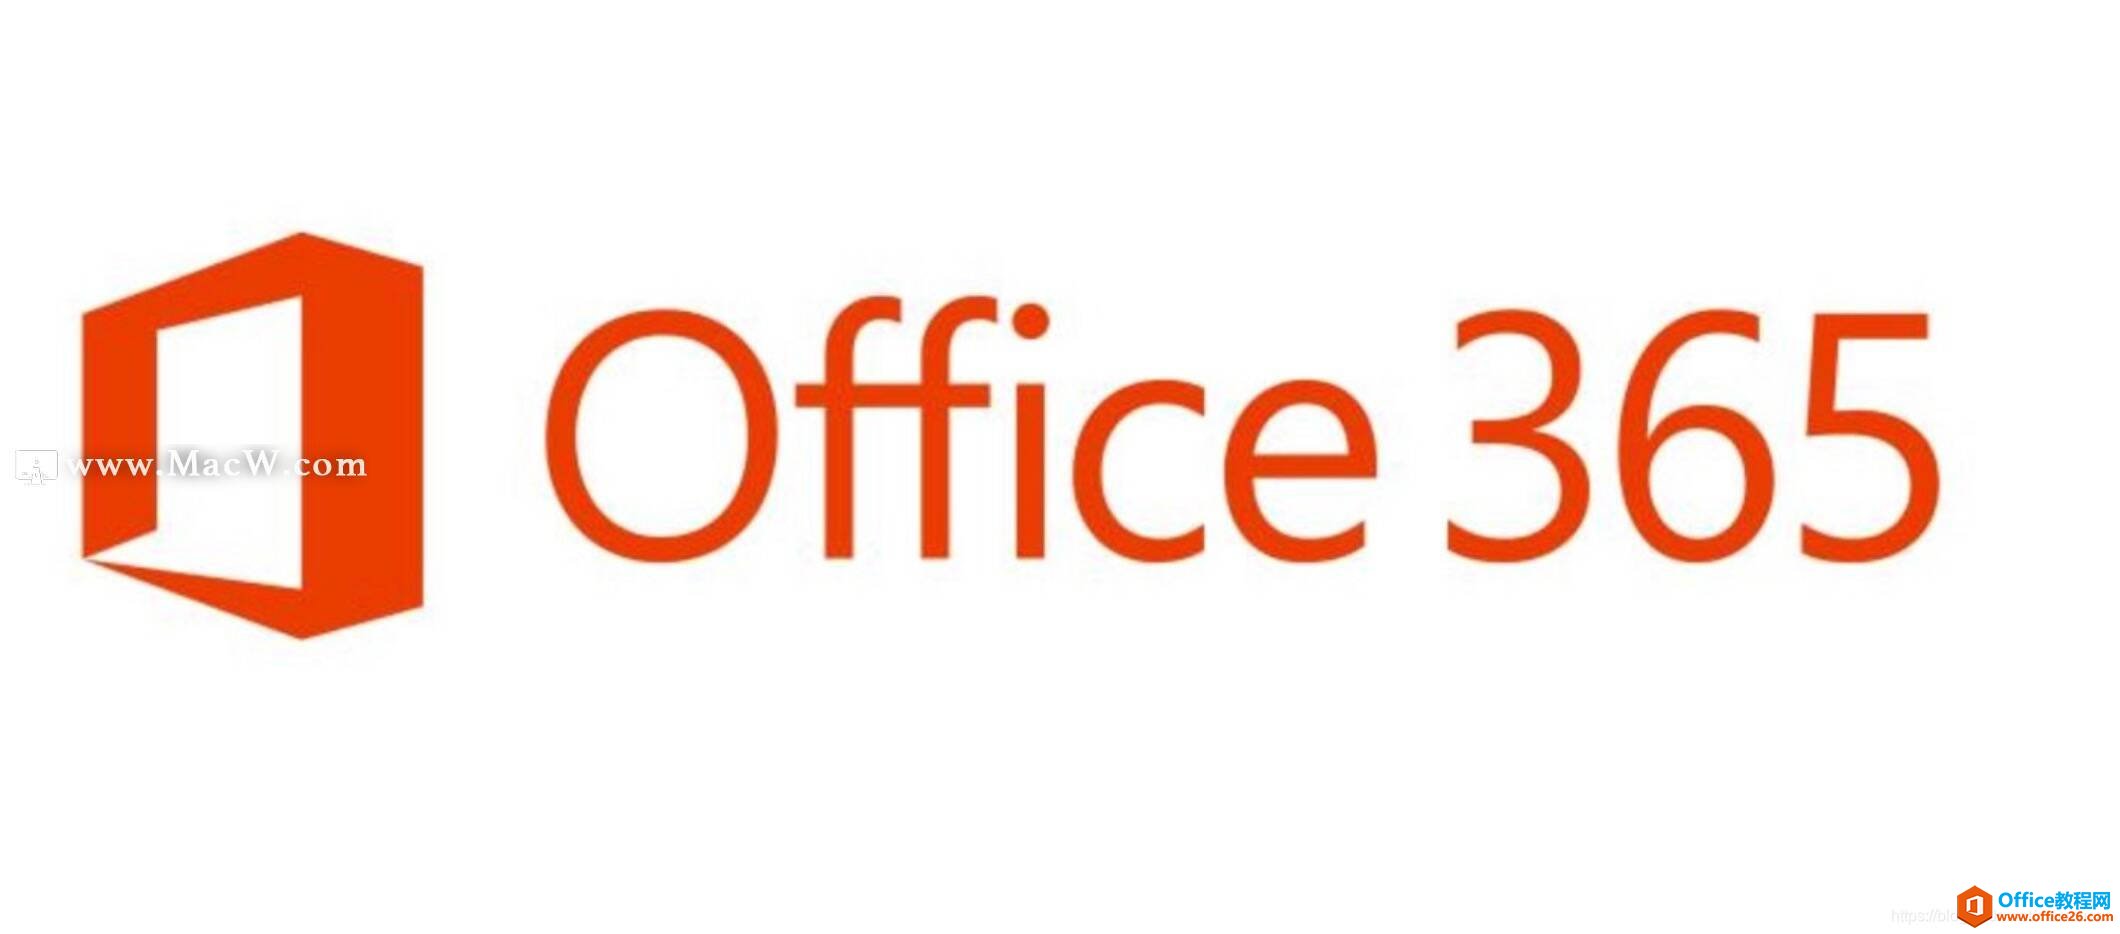 Office 365 和 Office 2019 之间有什么区别？